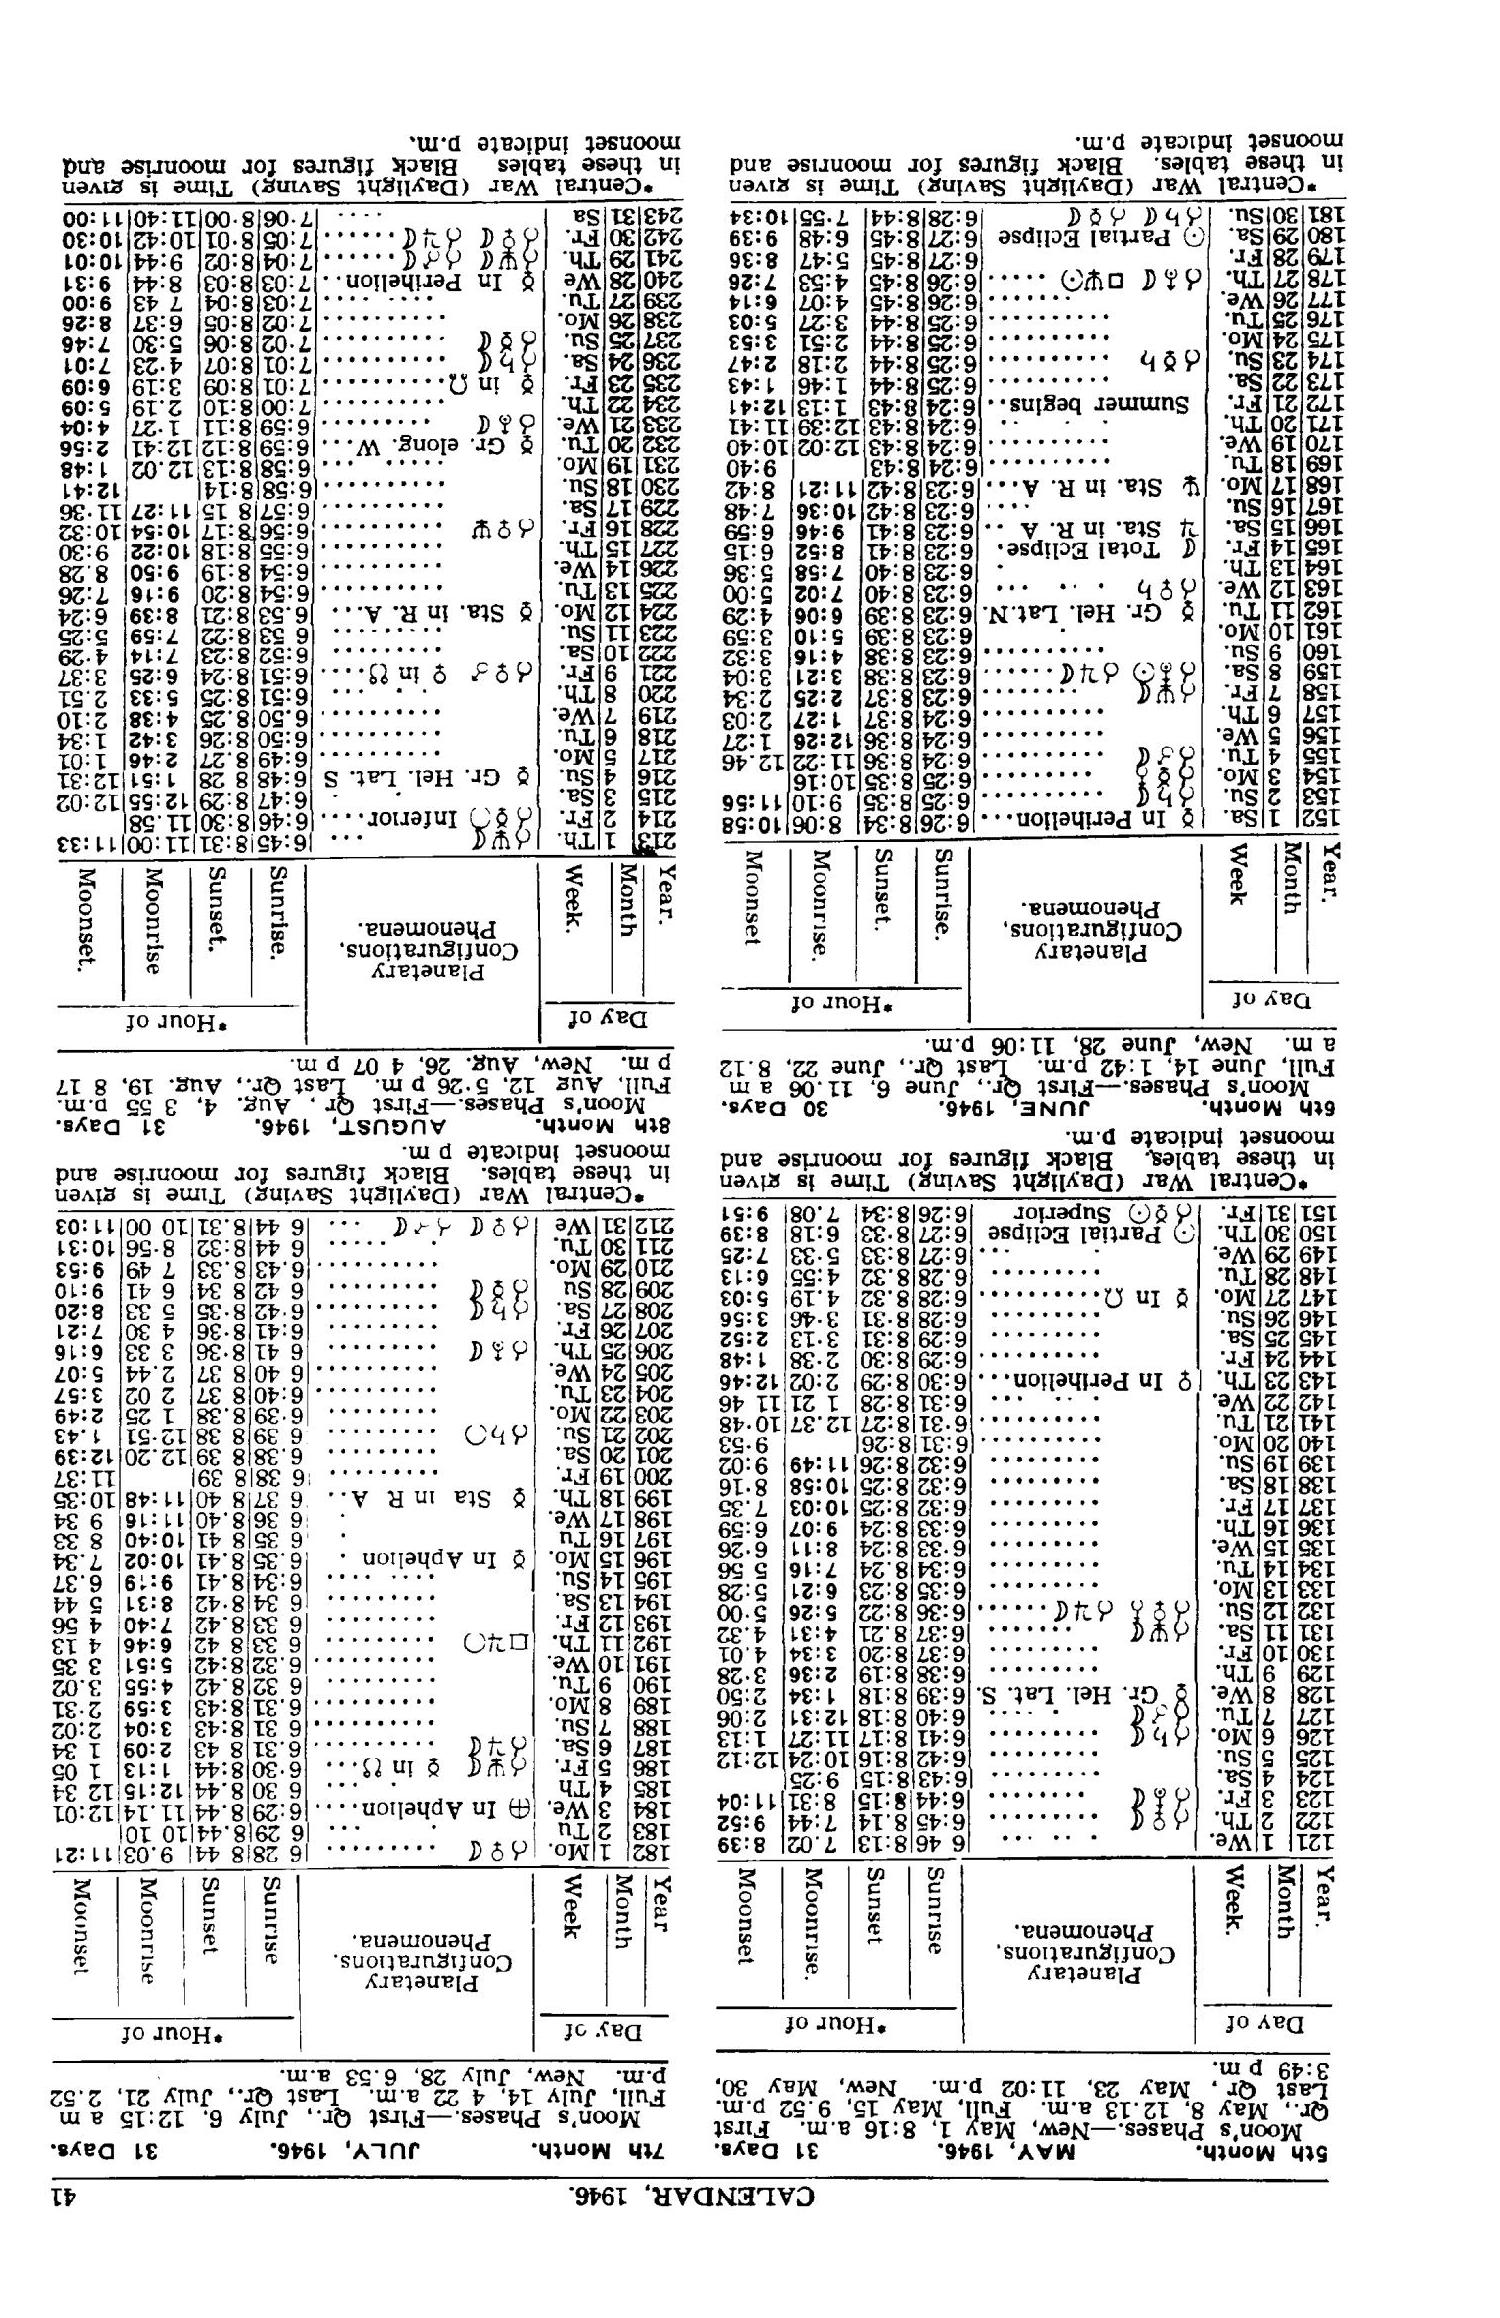 Texas Almanac, 1945-1946
                                                
                                                    41
                                                